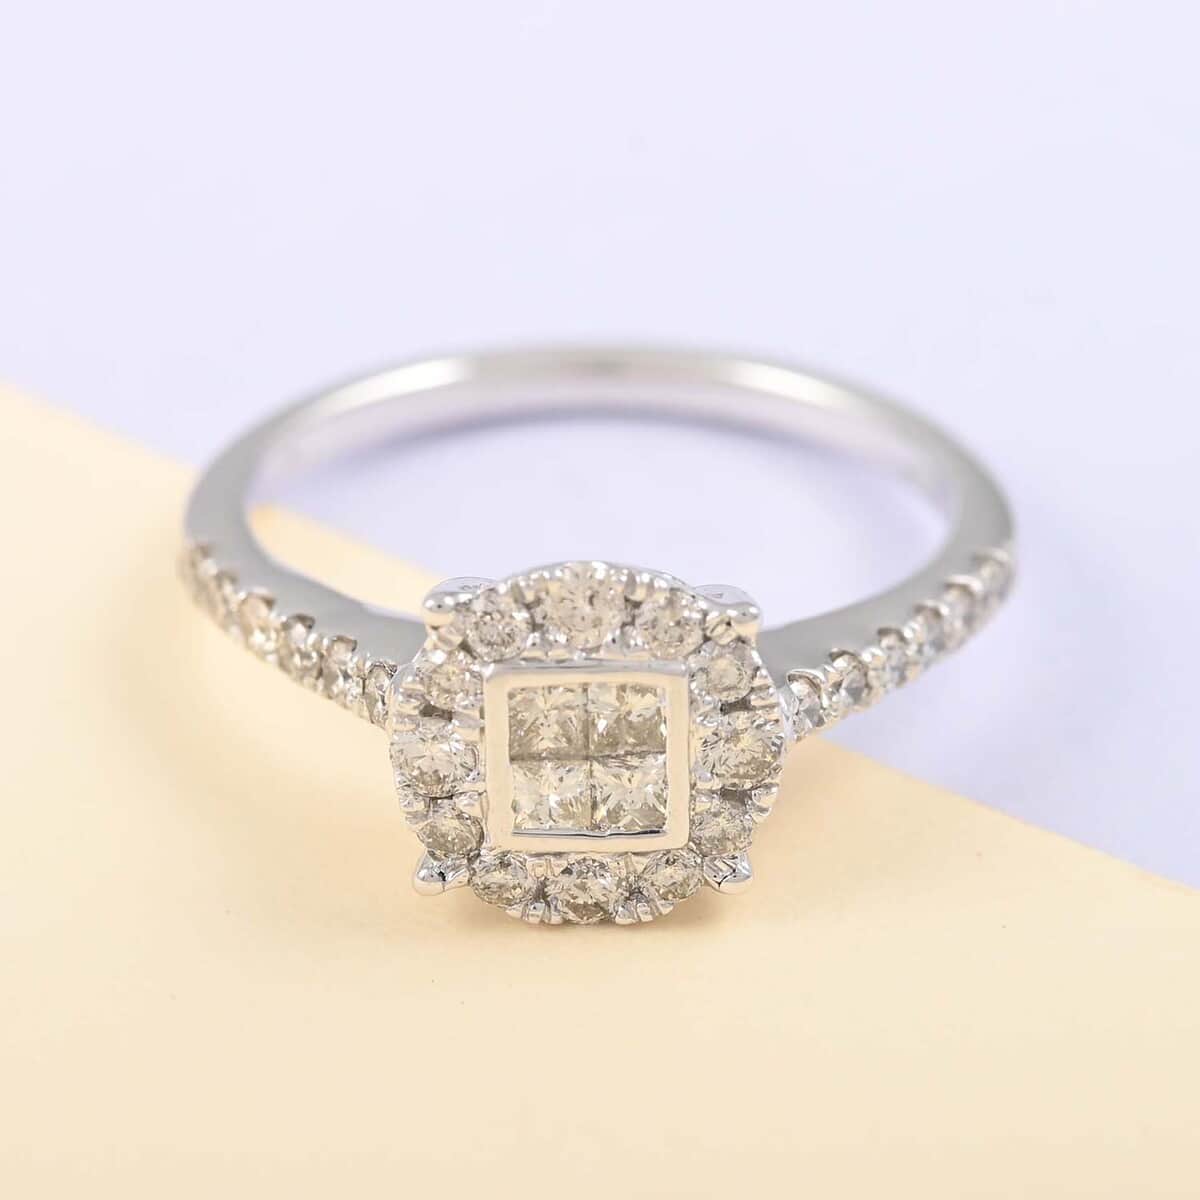 10K White Gold Diamond I-J I1 Ring (Size 7.0) 2.75 Grams 0.75 ctw image number 1